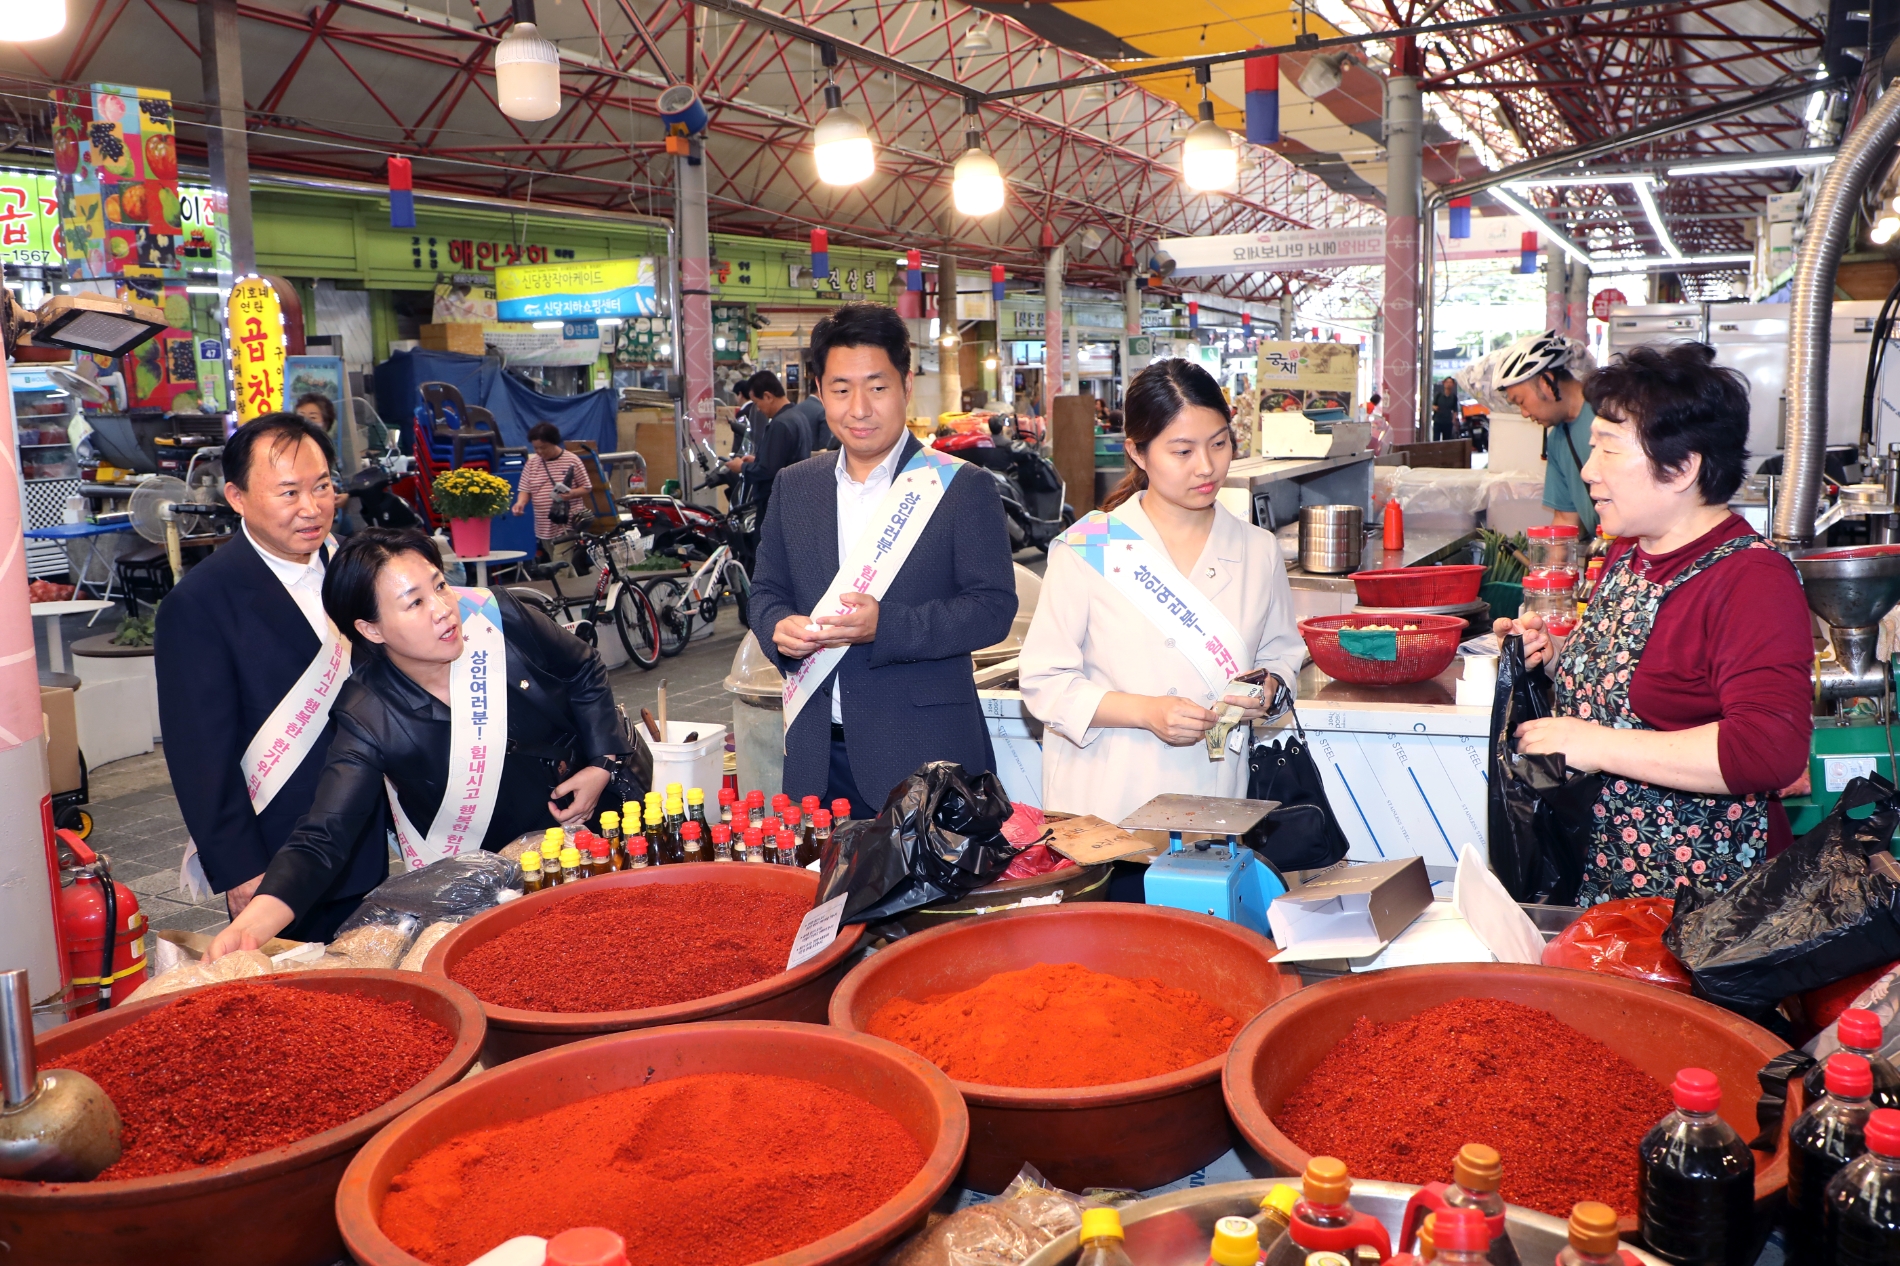 왼쪽부터 소재권, 양은미, 허상욱, 손주하 의원이 상인과 소통하는 모습./사진제공=중구의회